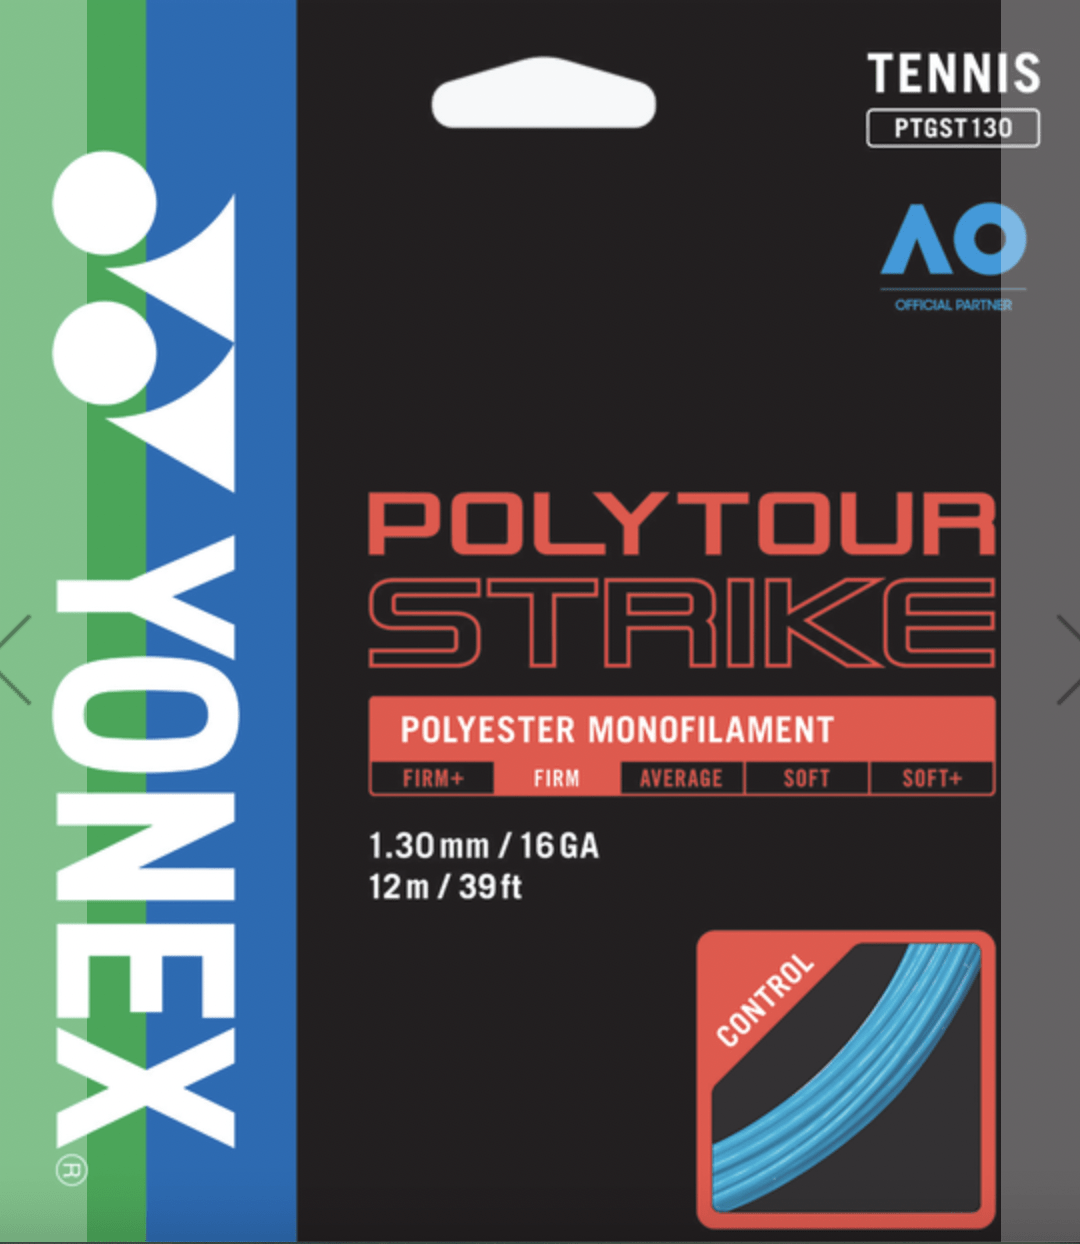 Yonex Poly Tour Strike strings